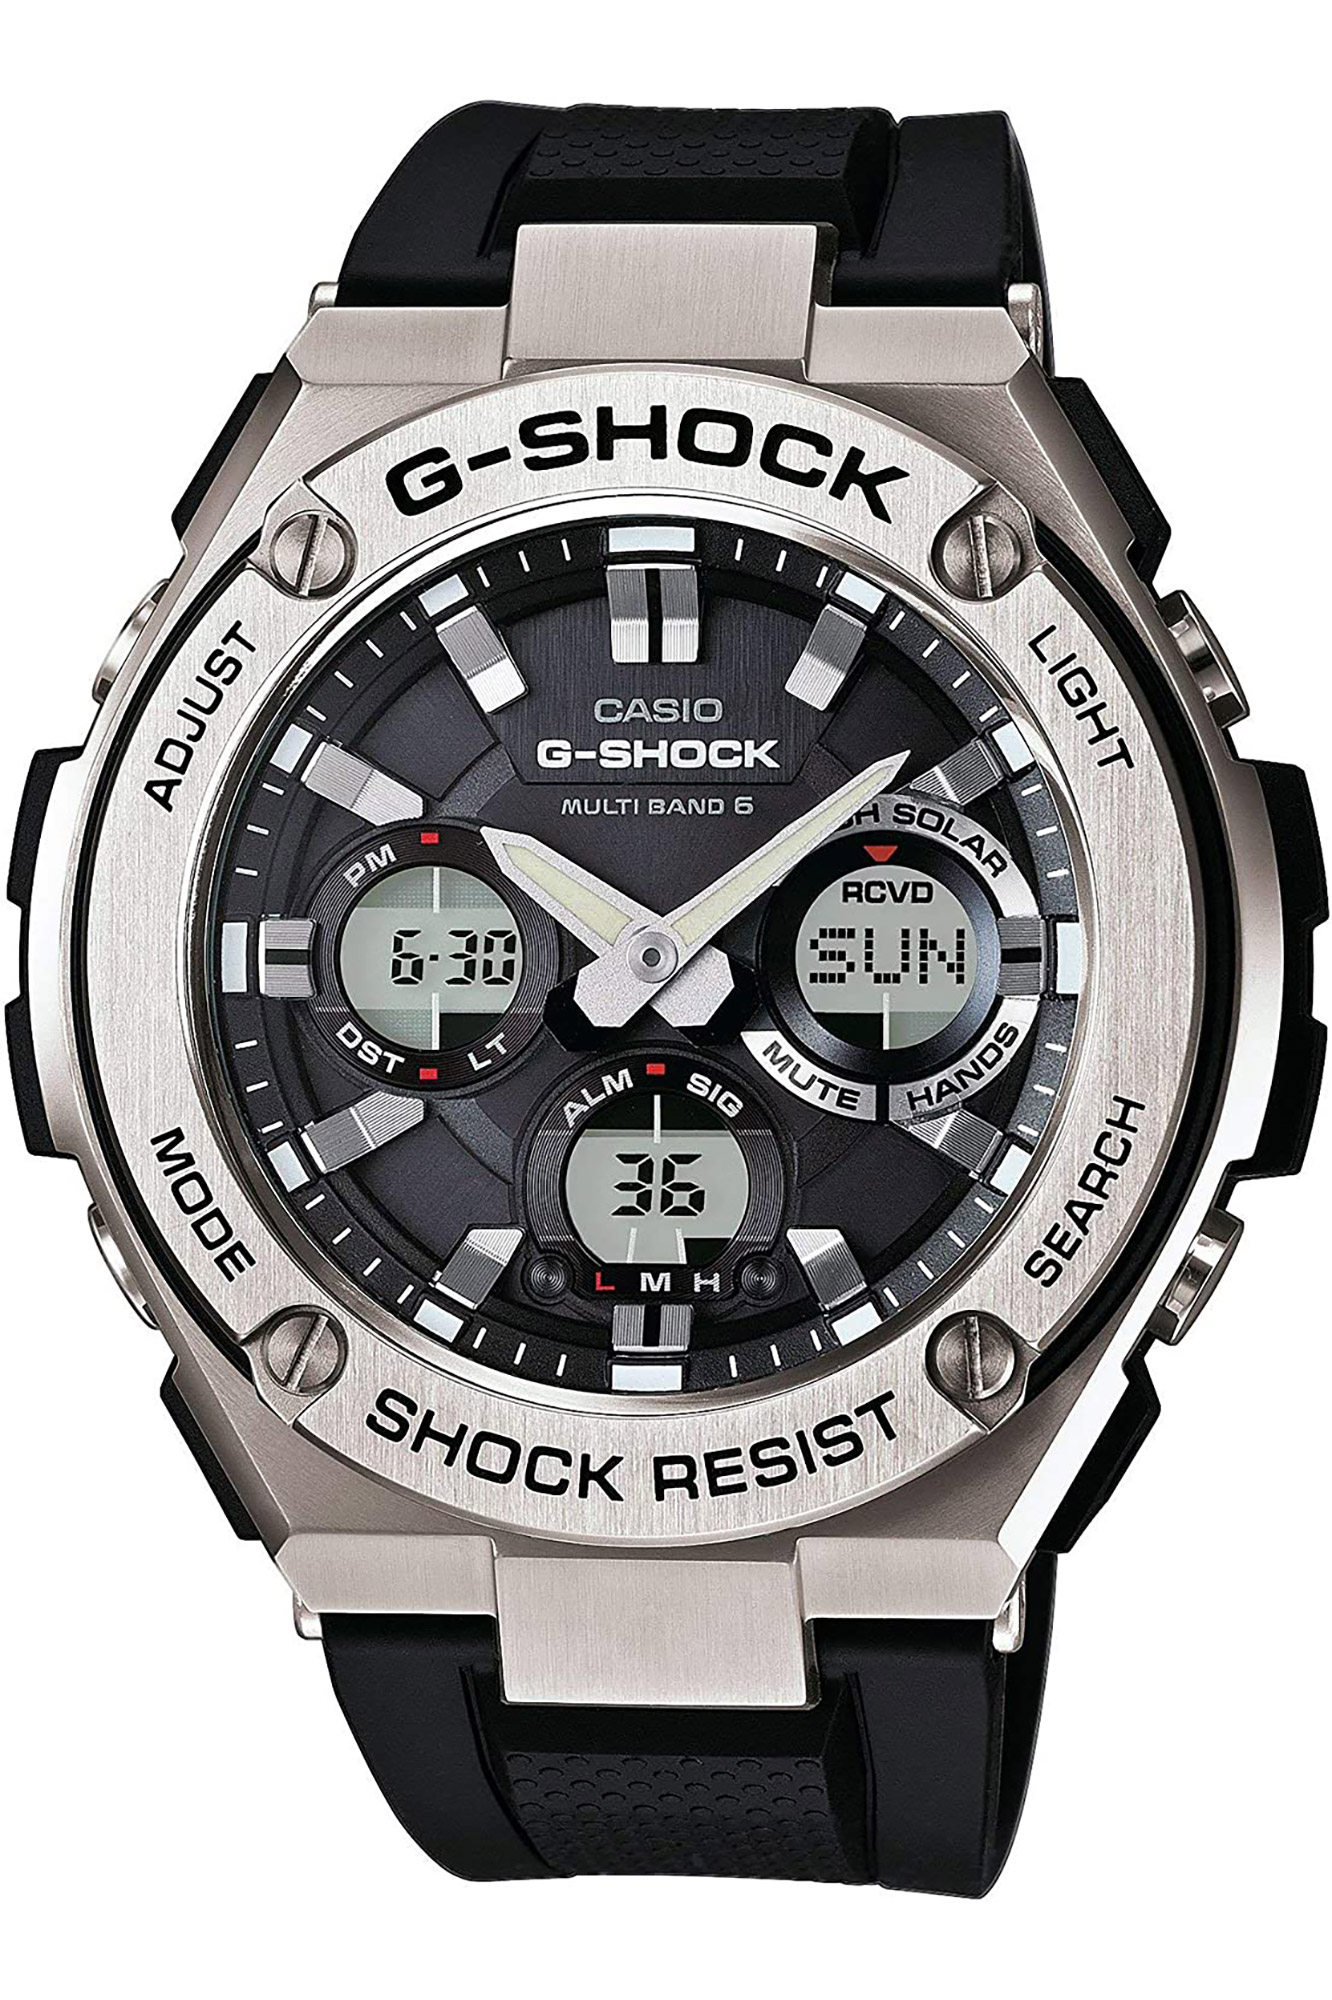 Montre CASIO G-Shock gst-w110-1aer